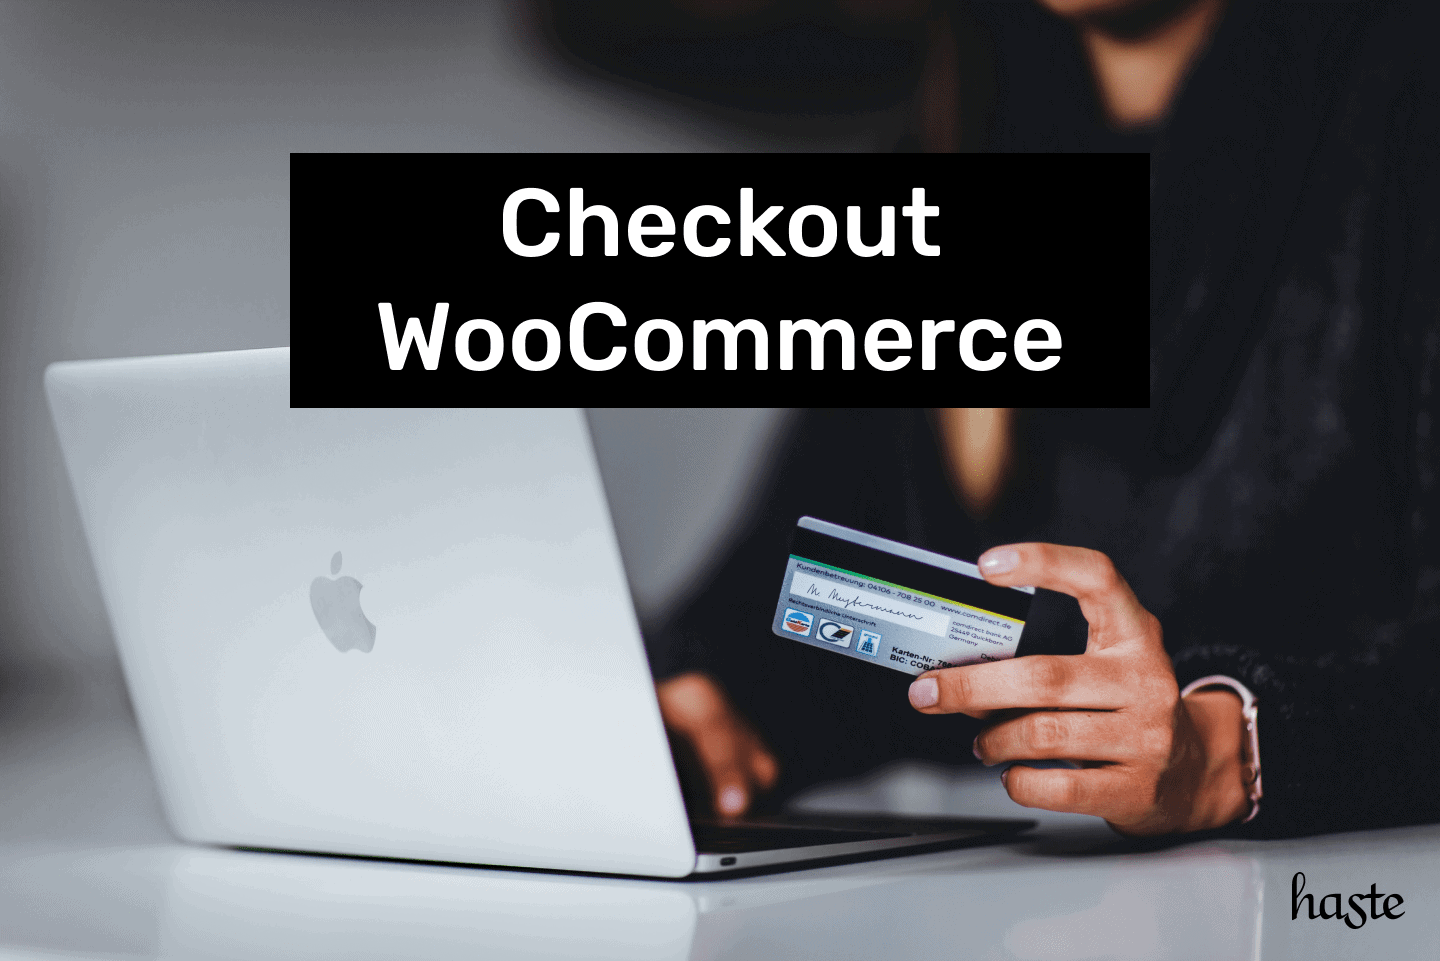 Checkout WooCommerce. Imagem ilustrativa.